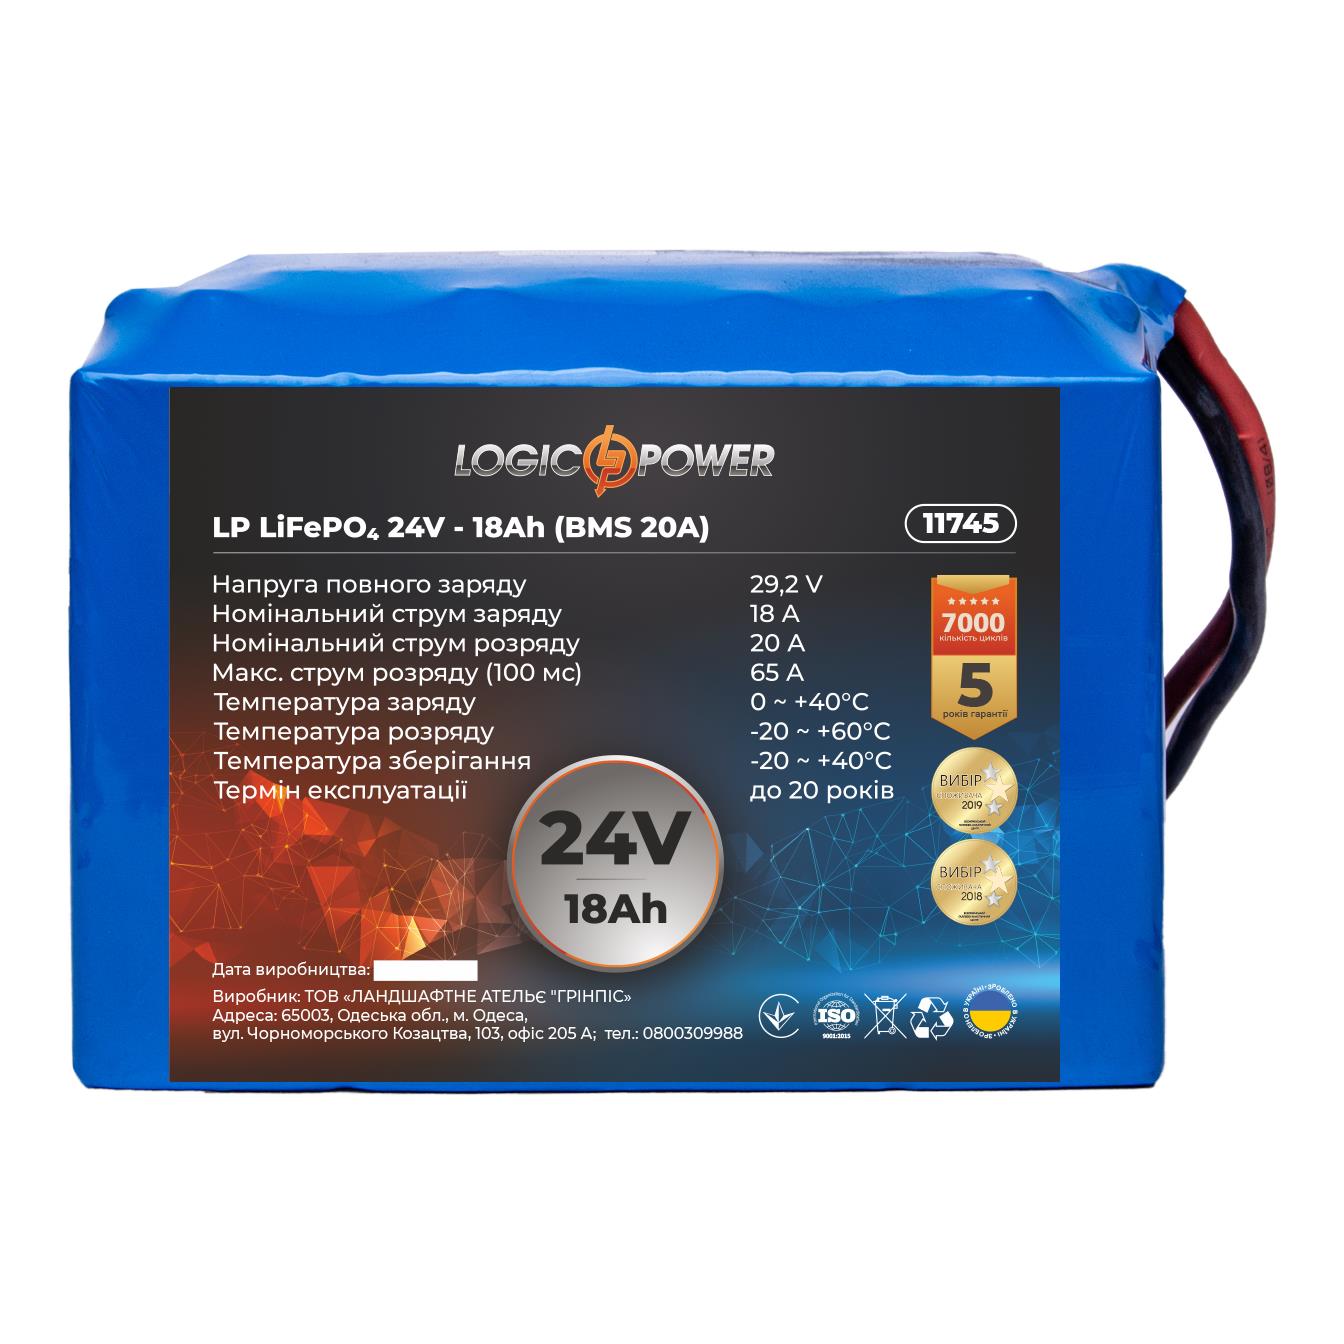 Акумулятор літій-залізо-фосфатний LogicPower LP LiFePO4 24V - 18 Ah (BMS 20A) (11745)